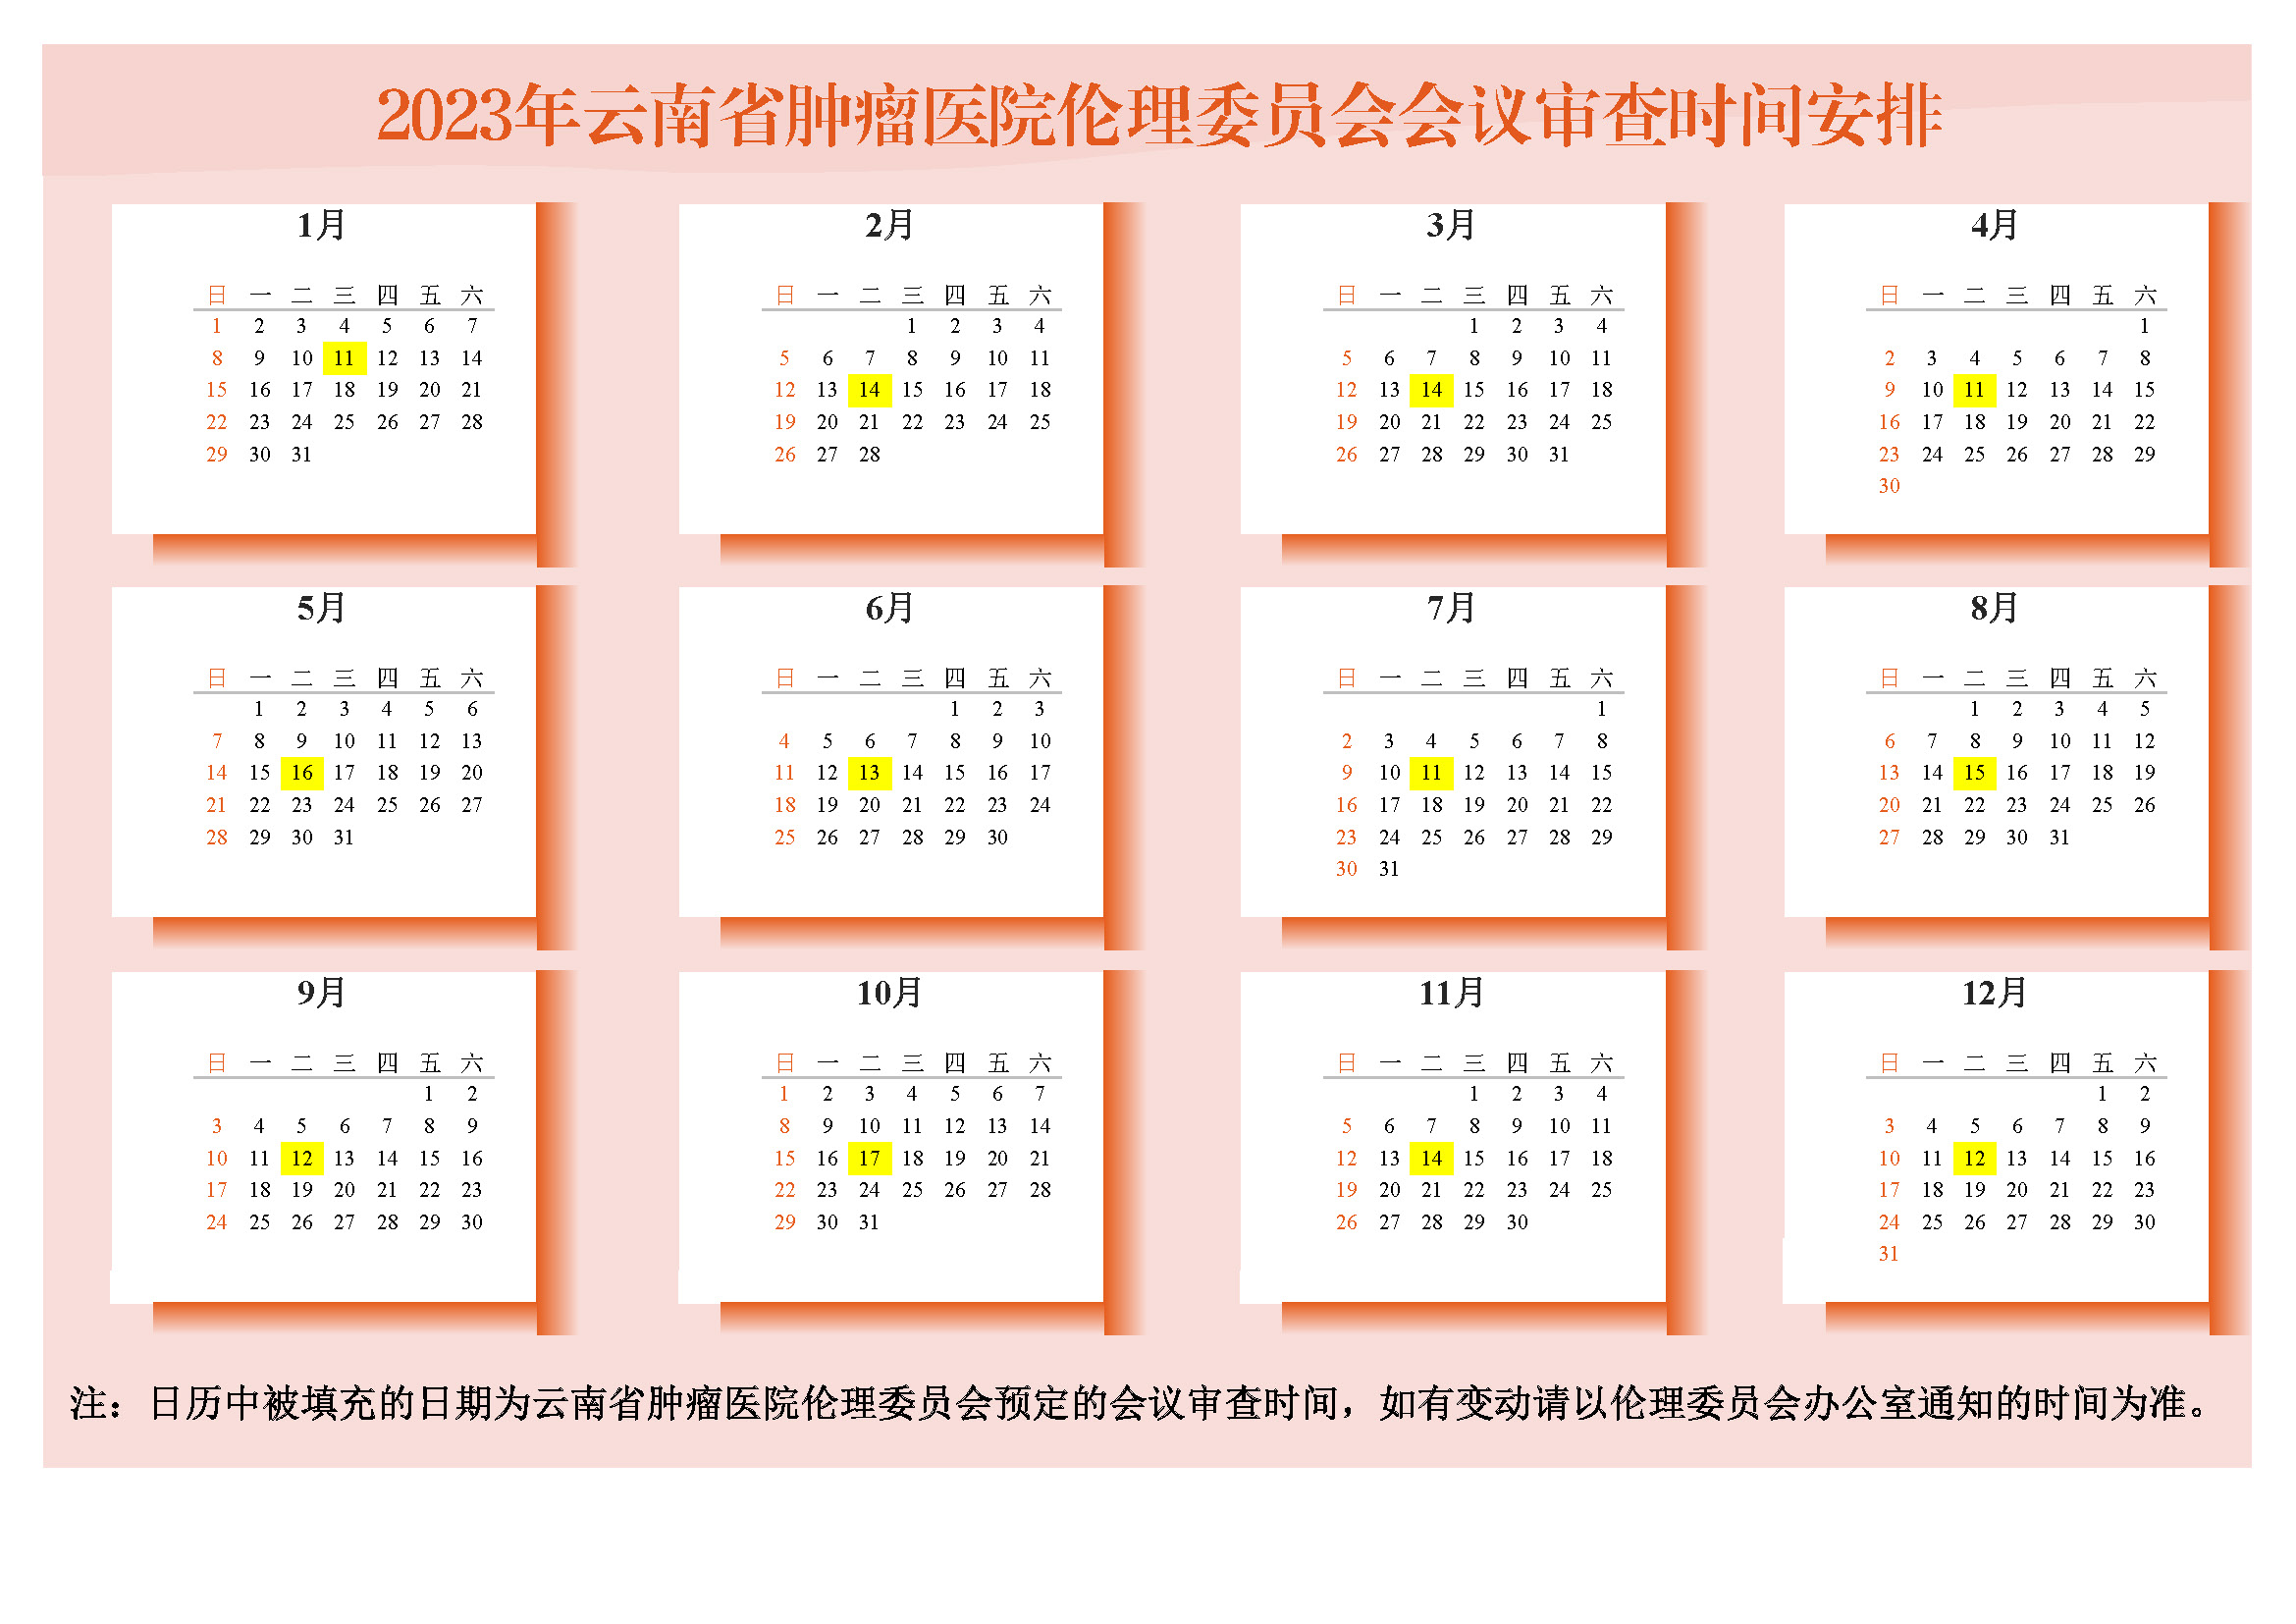 20230118发：2023年云南省肿瘤医院伦理委员会会议审查时间安排